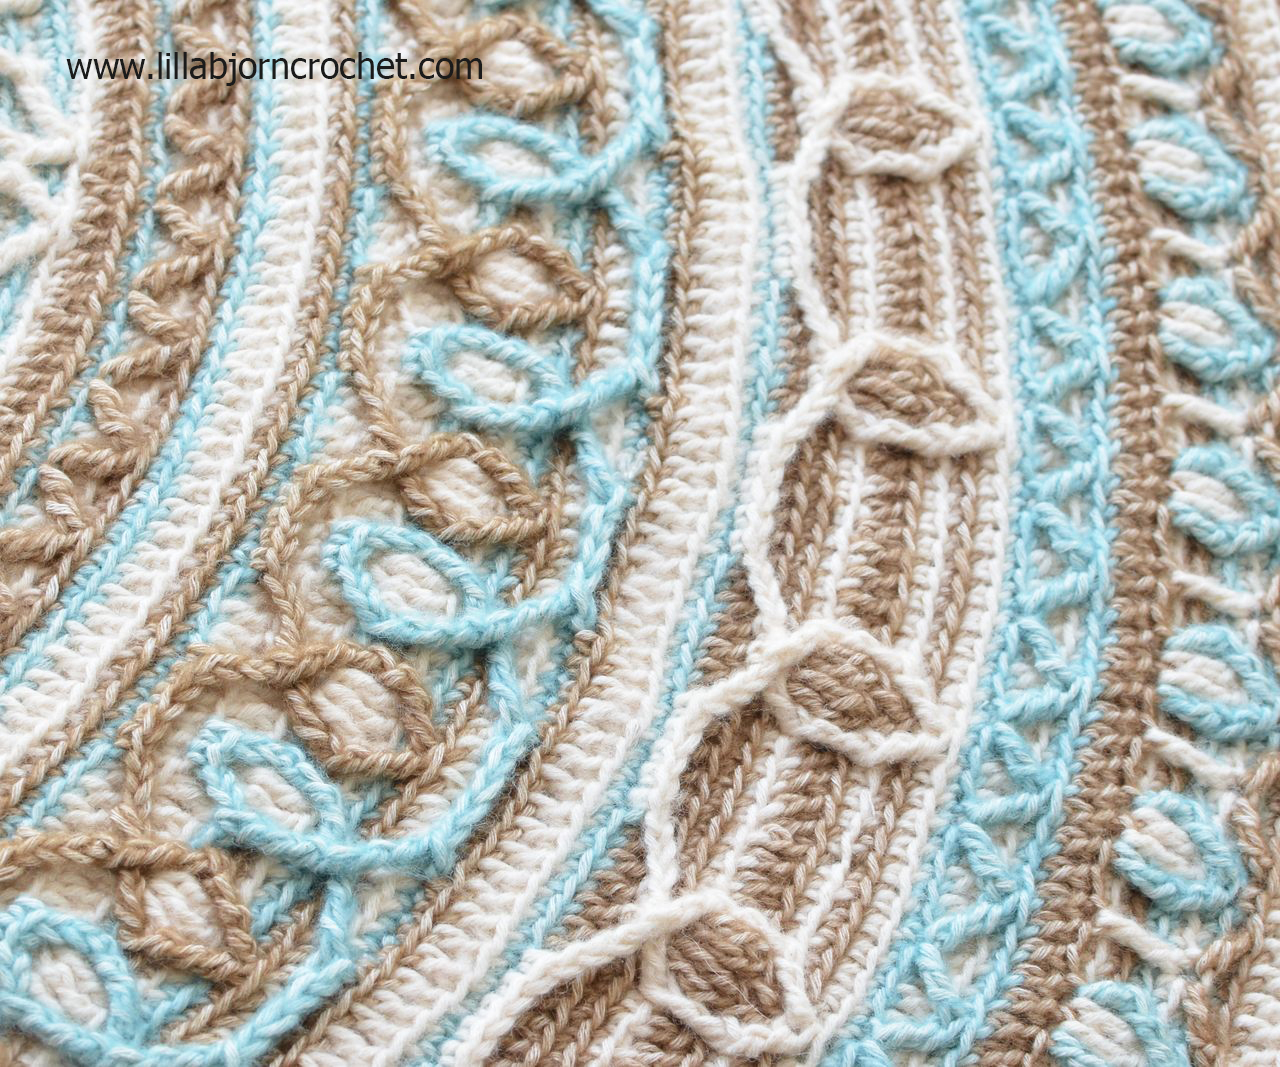 Joana's Mandala and Border - overlay crochet pattern by Lilla Bjorn Crochet